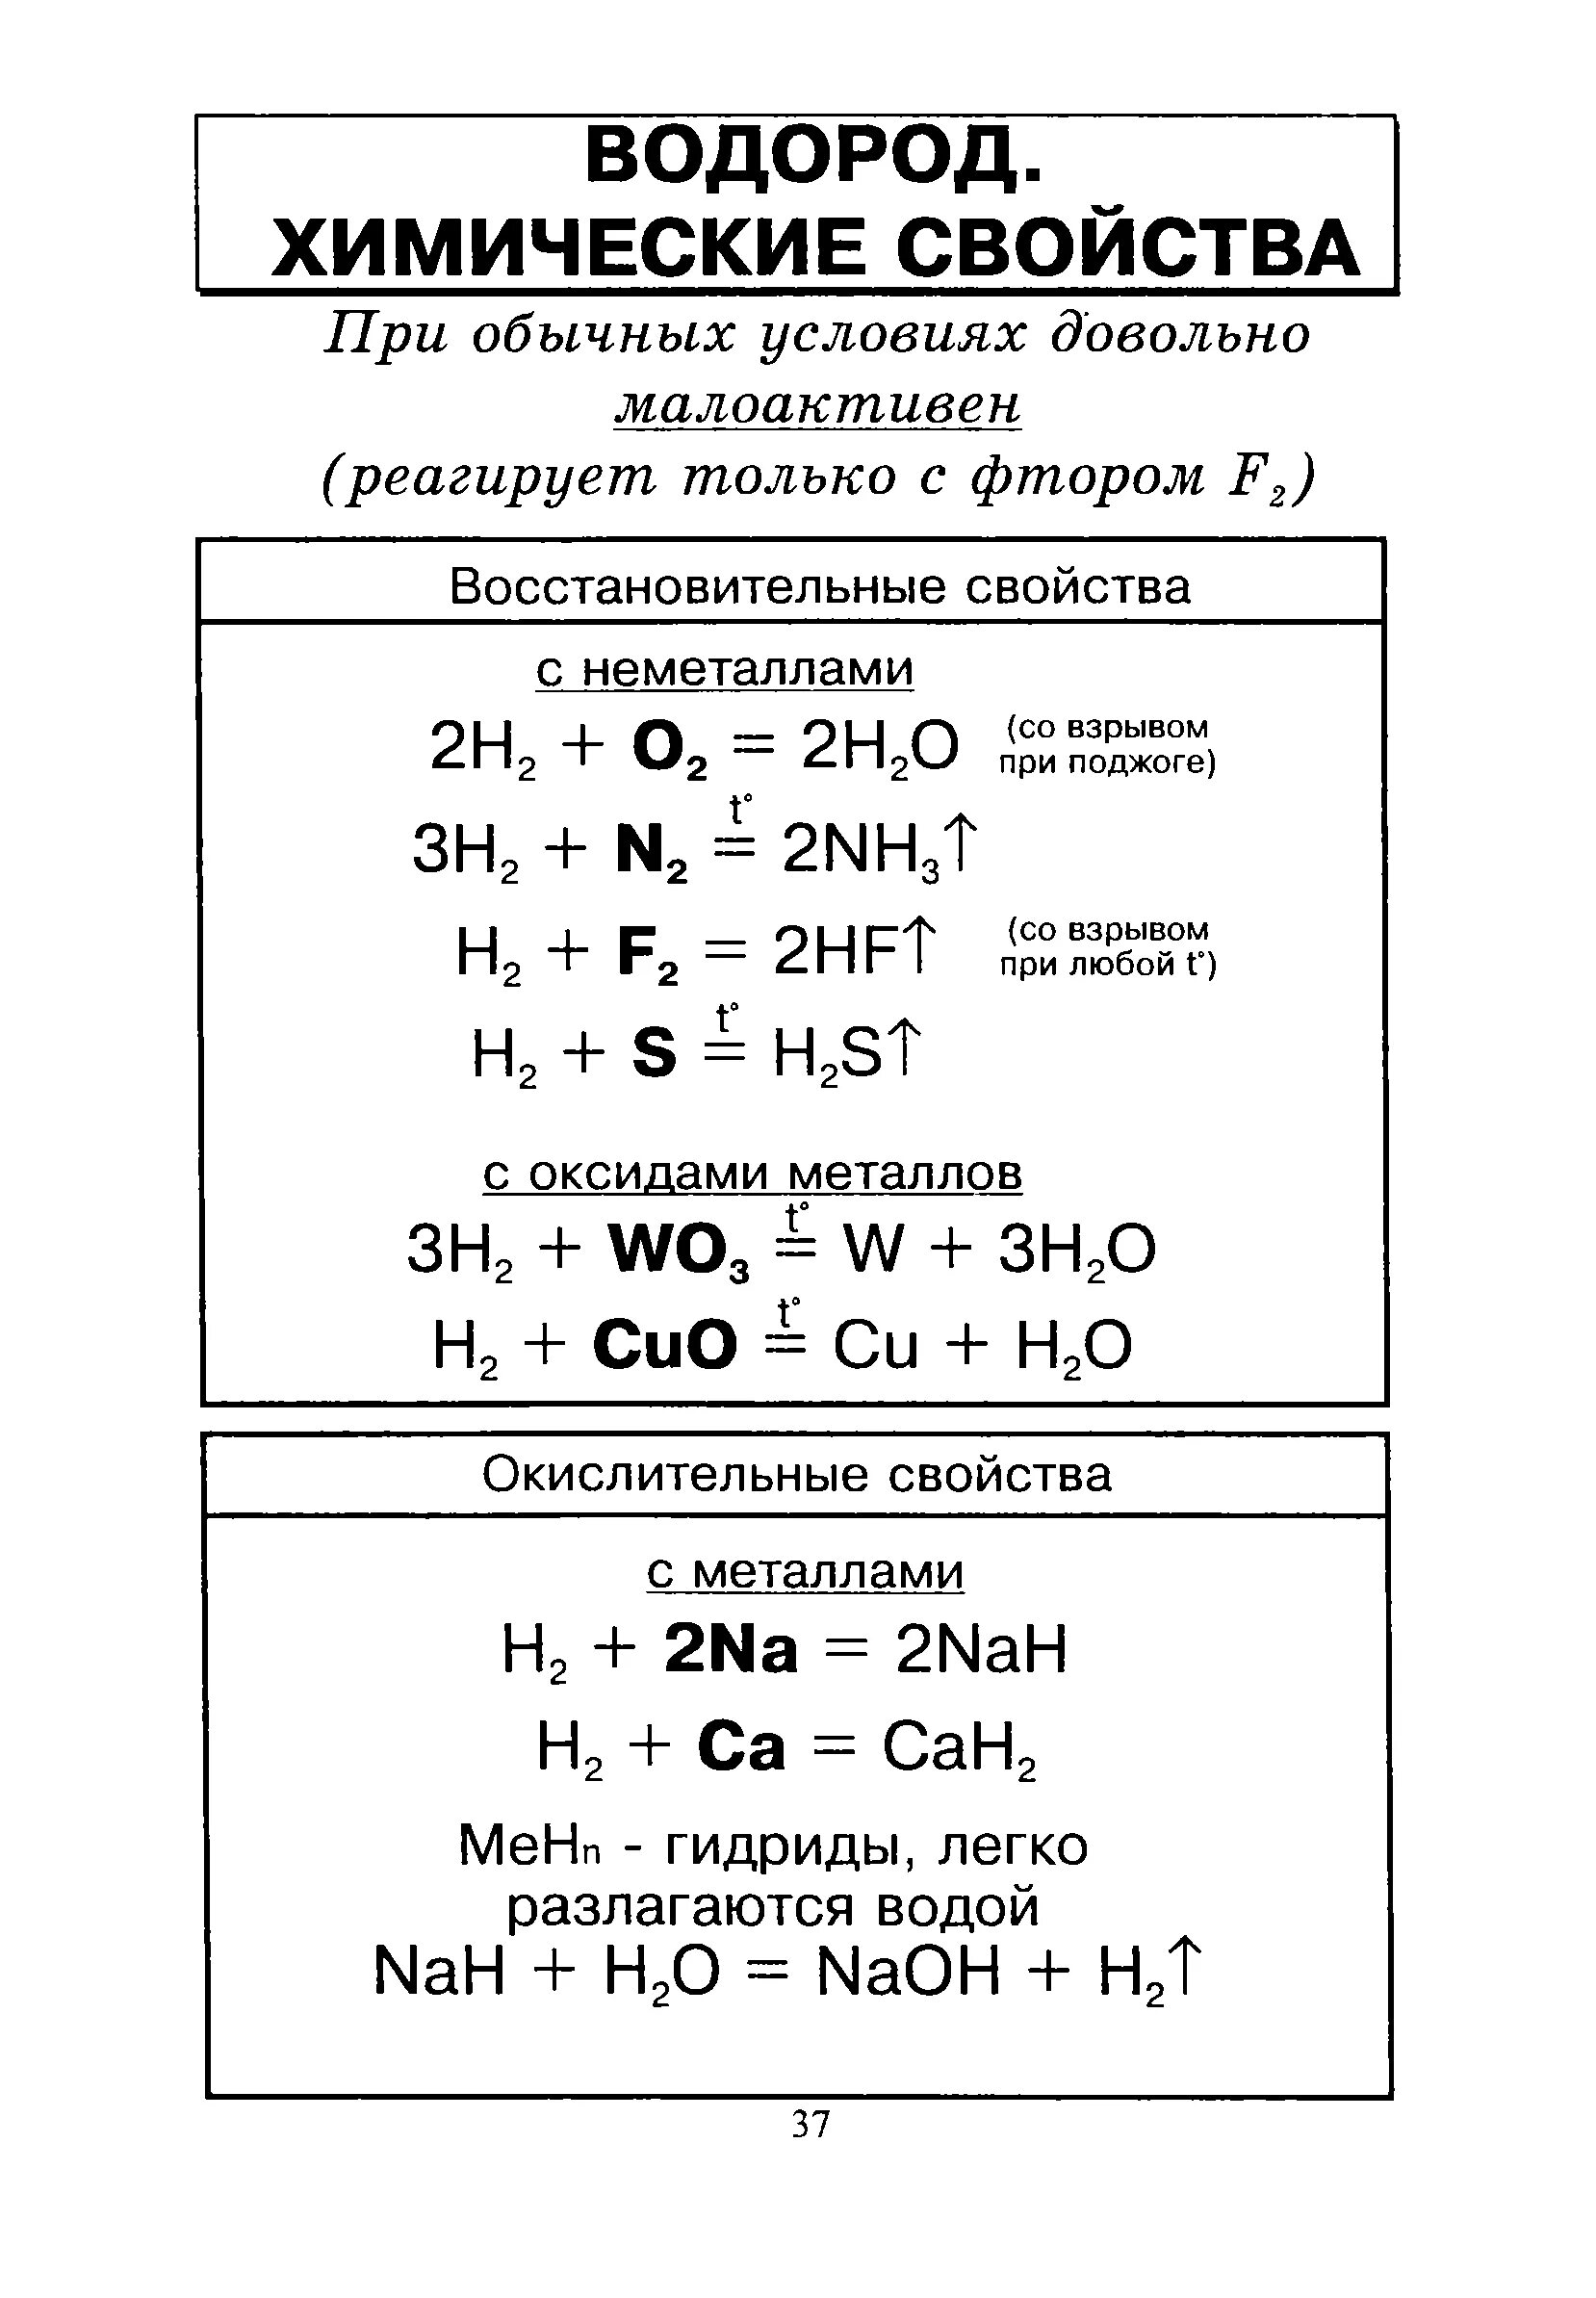 Химические свойства водорода 8 класс химия. Химические свойства водорода 9 класс химия. Химические свойства водорода реакции. Характеристика водорода химические свойства. Название продуктов реакции водорода